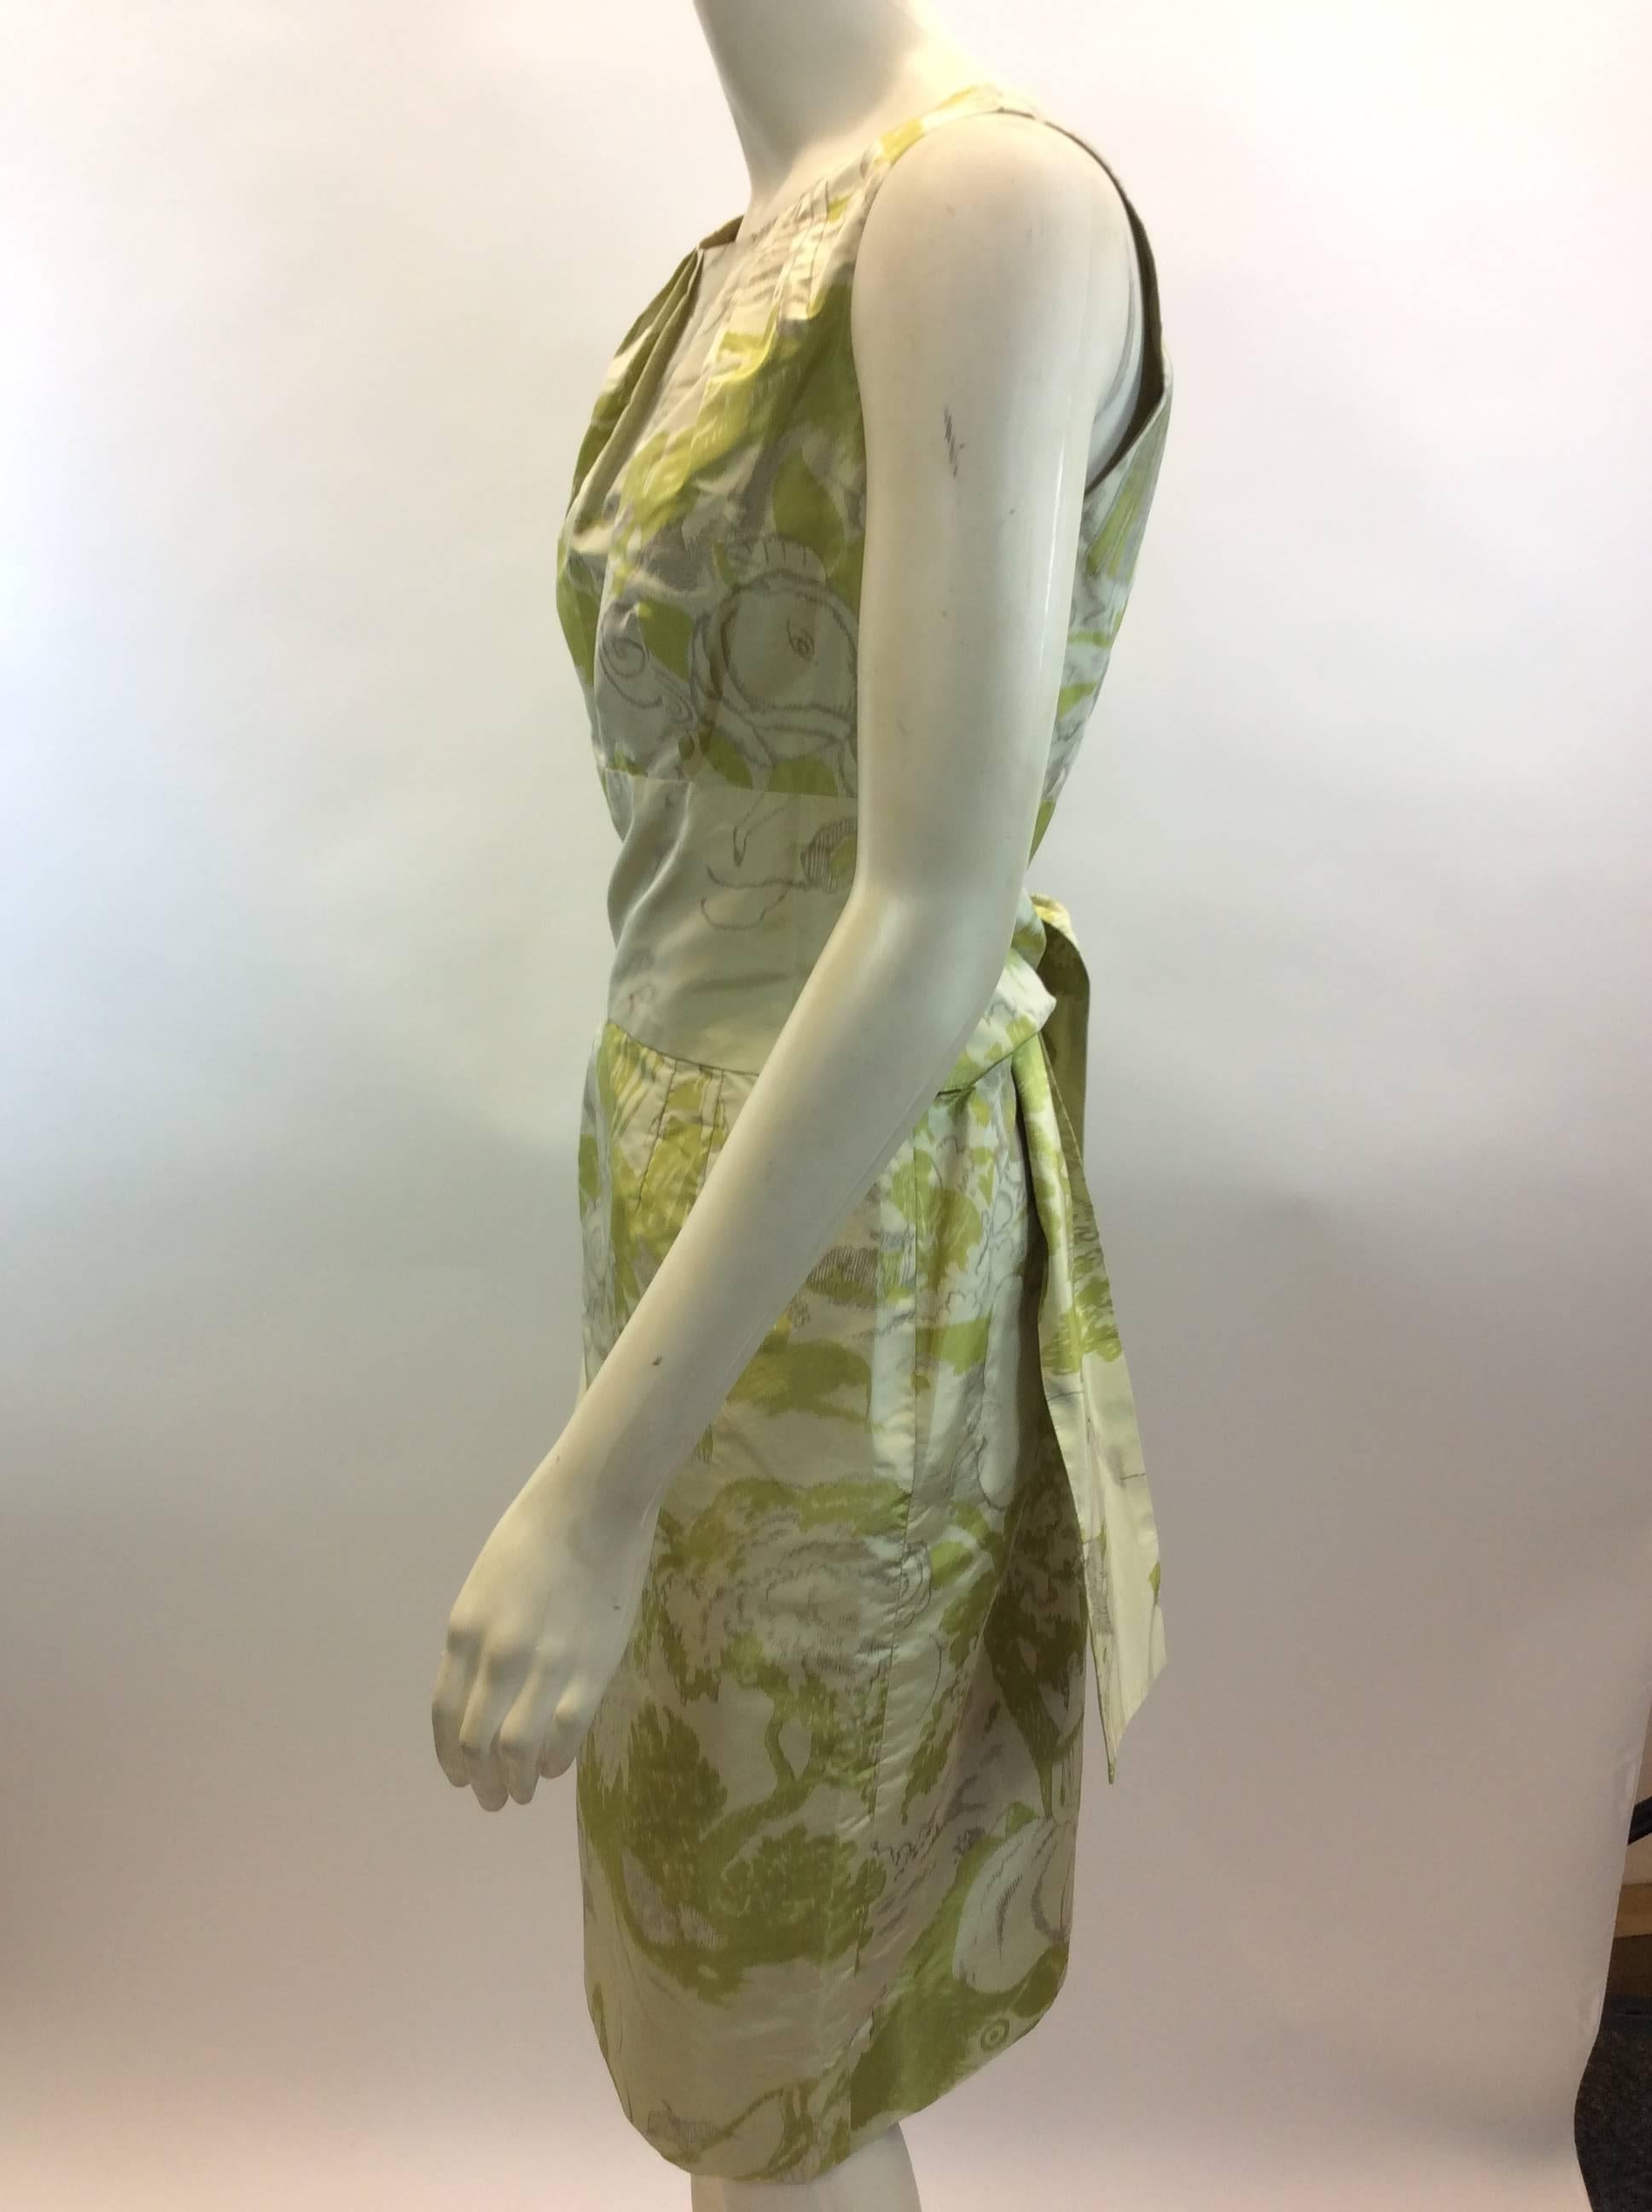 Bill Blass Green Print Dress
$425
Made in the USA
Silk
Size 6
Length 38